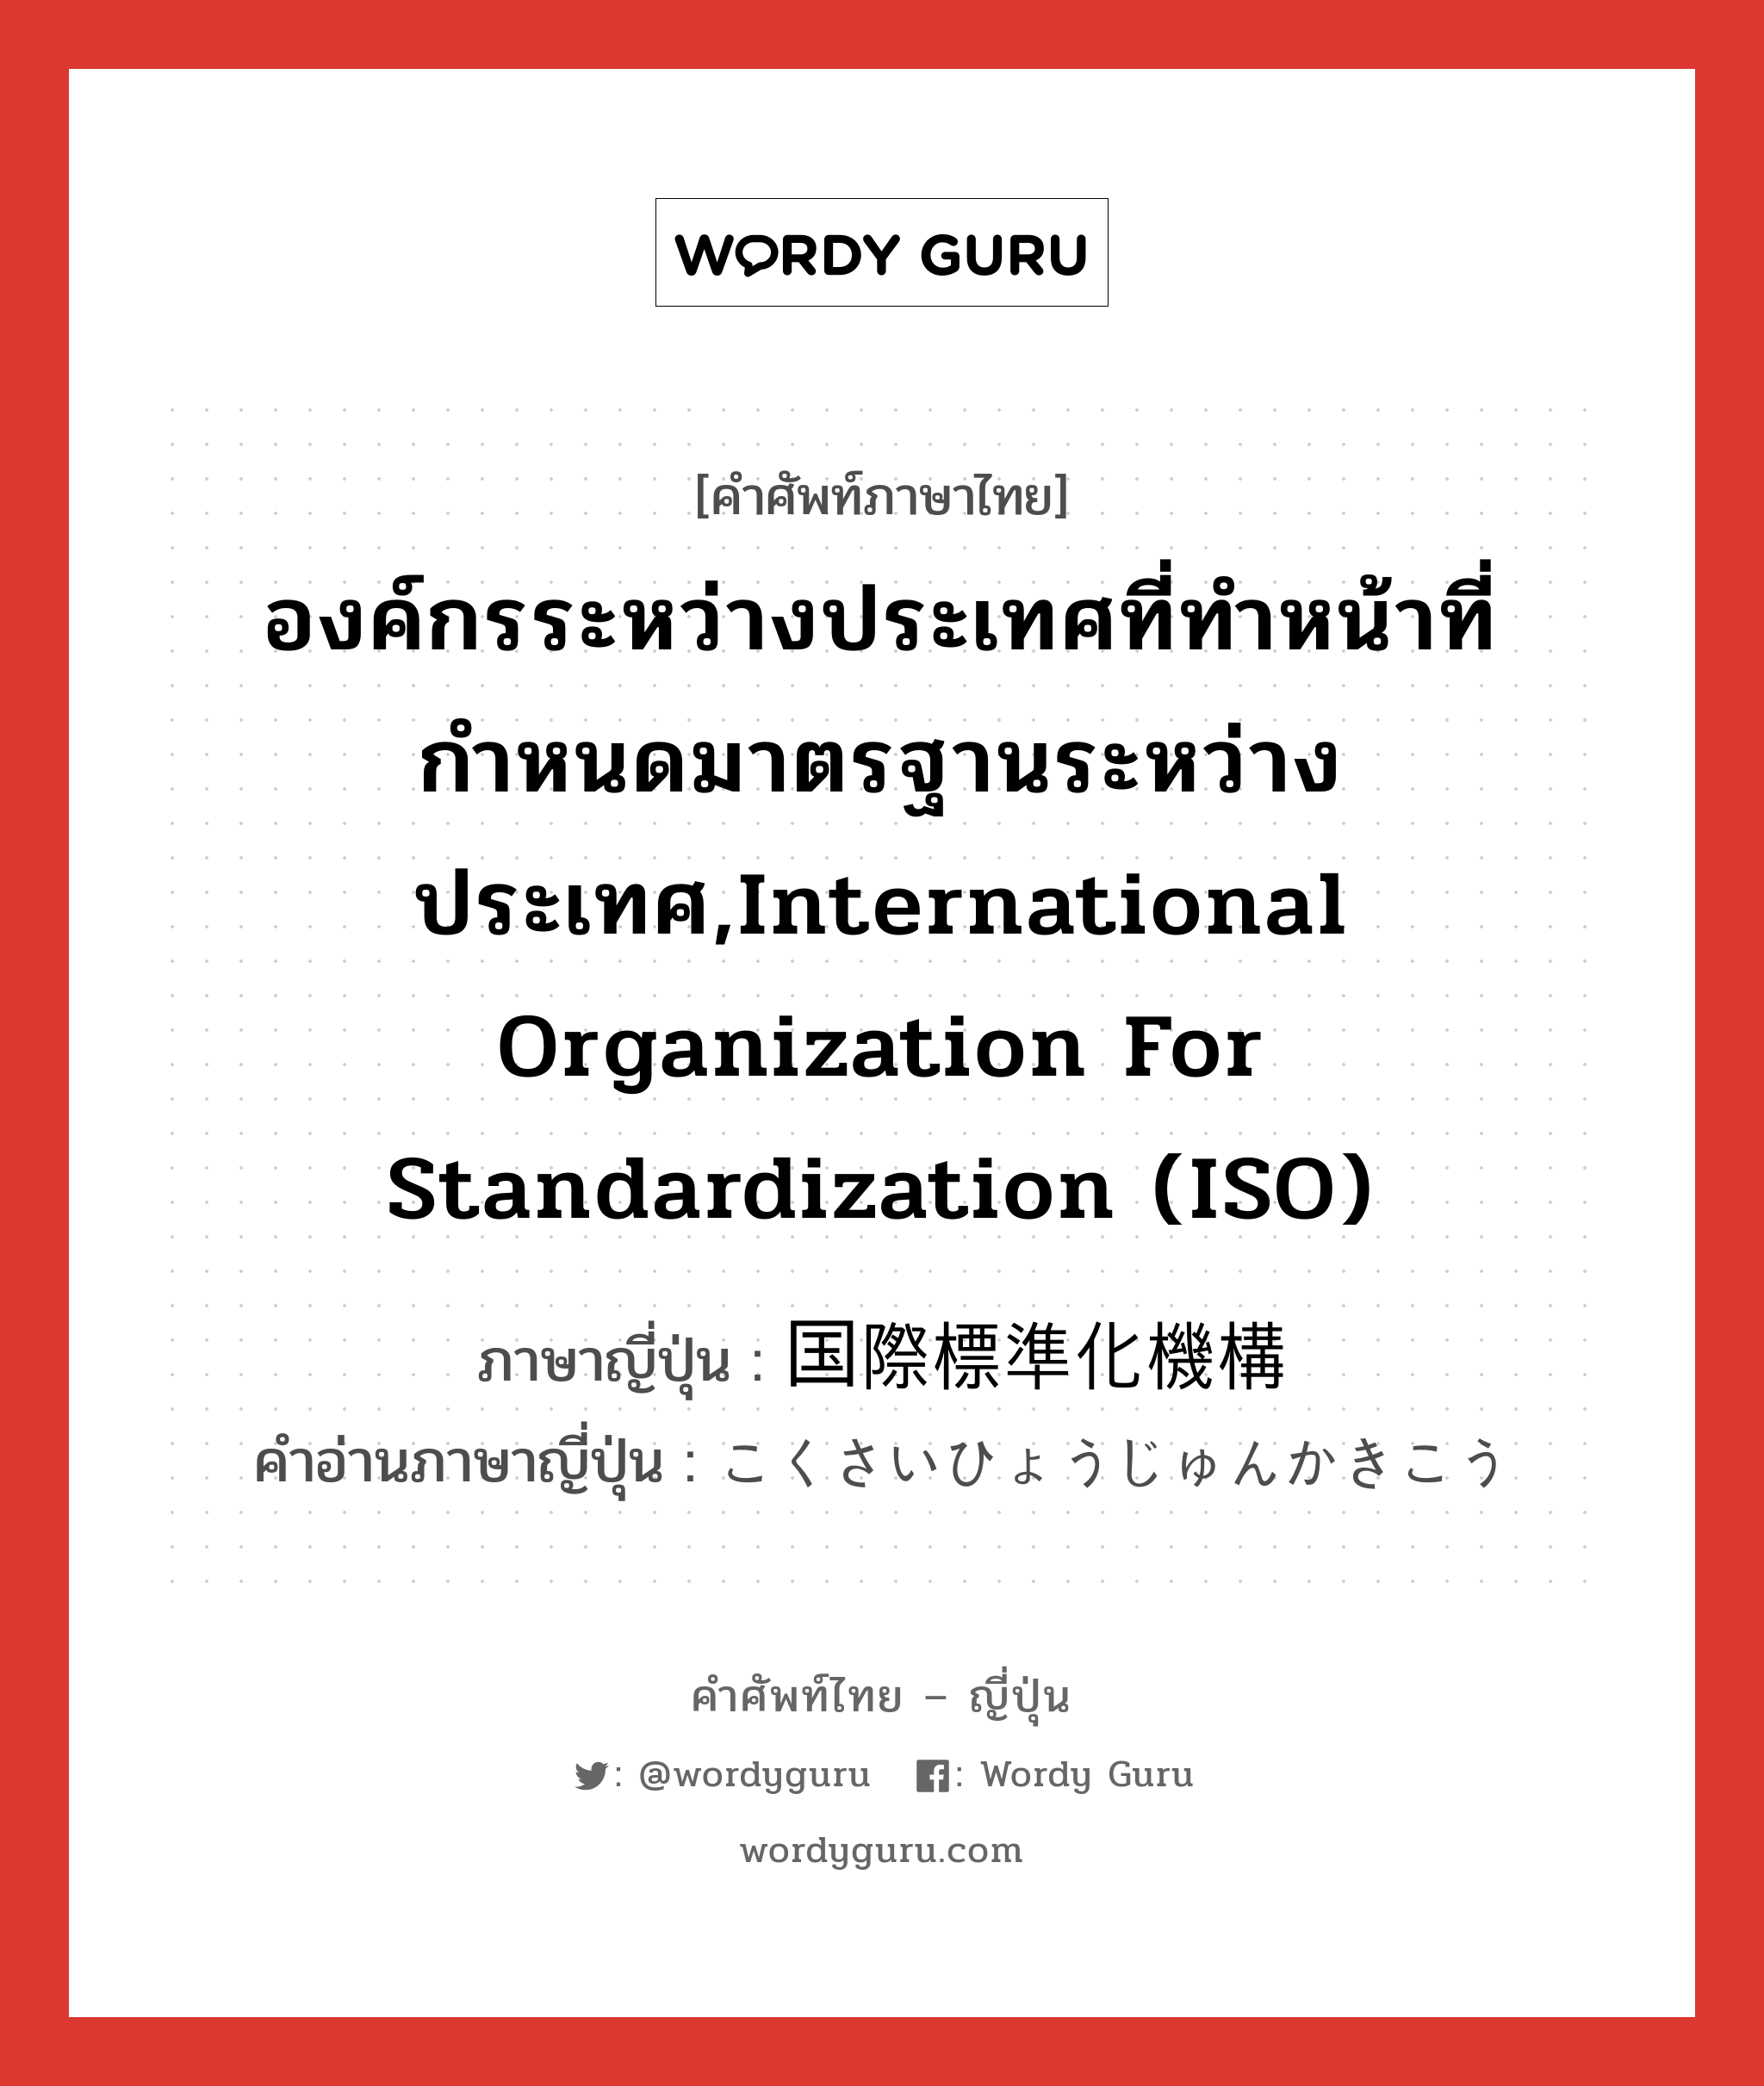 องค์กรระหว่างประเทศที่ทำหน้าที่กำหนดมาตรฐานระหว่างประเทศ,International Organization for Standardization (ISO) ภาษาญี่ปุ่นคืออะไร, คำศัพท์ภาษาไทย - ญี่ปุ่น องค์กรระหว่างประเทศที่ทำหน้าที่กำหนดมาตรฐานระหว่างประเทศ,International Organization for Standardization (ISO) ภาษาญี่ปุ่น 国際標準化機構 คำอ่านภาษาญี่ปุ่น こくさいひょうじゅんかきこう หมวด n หมวด n